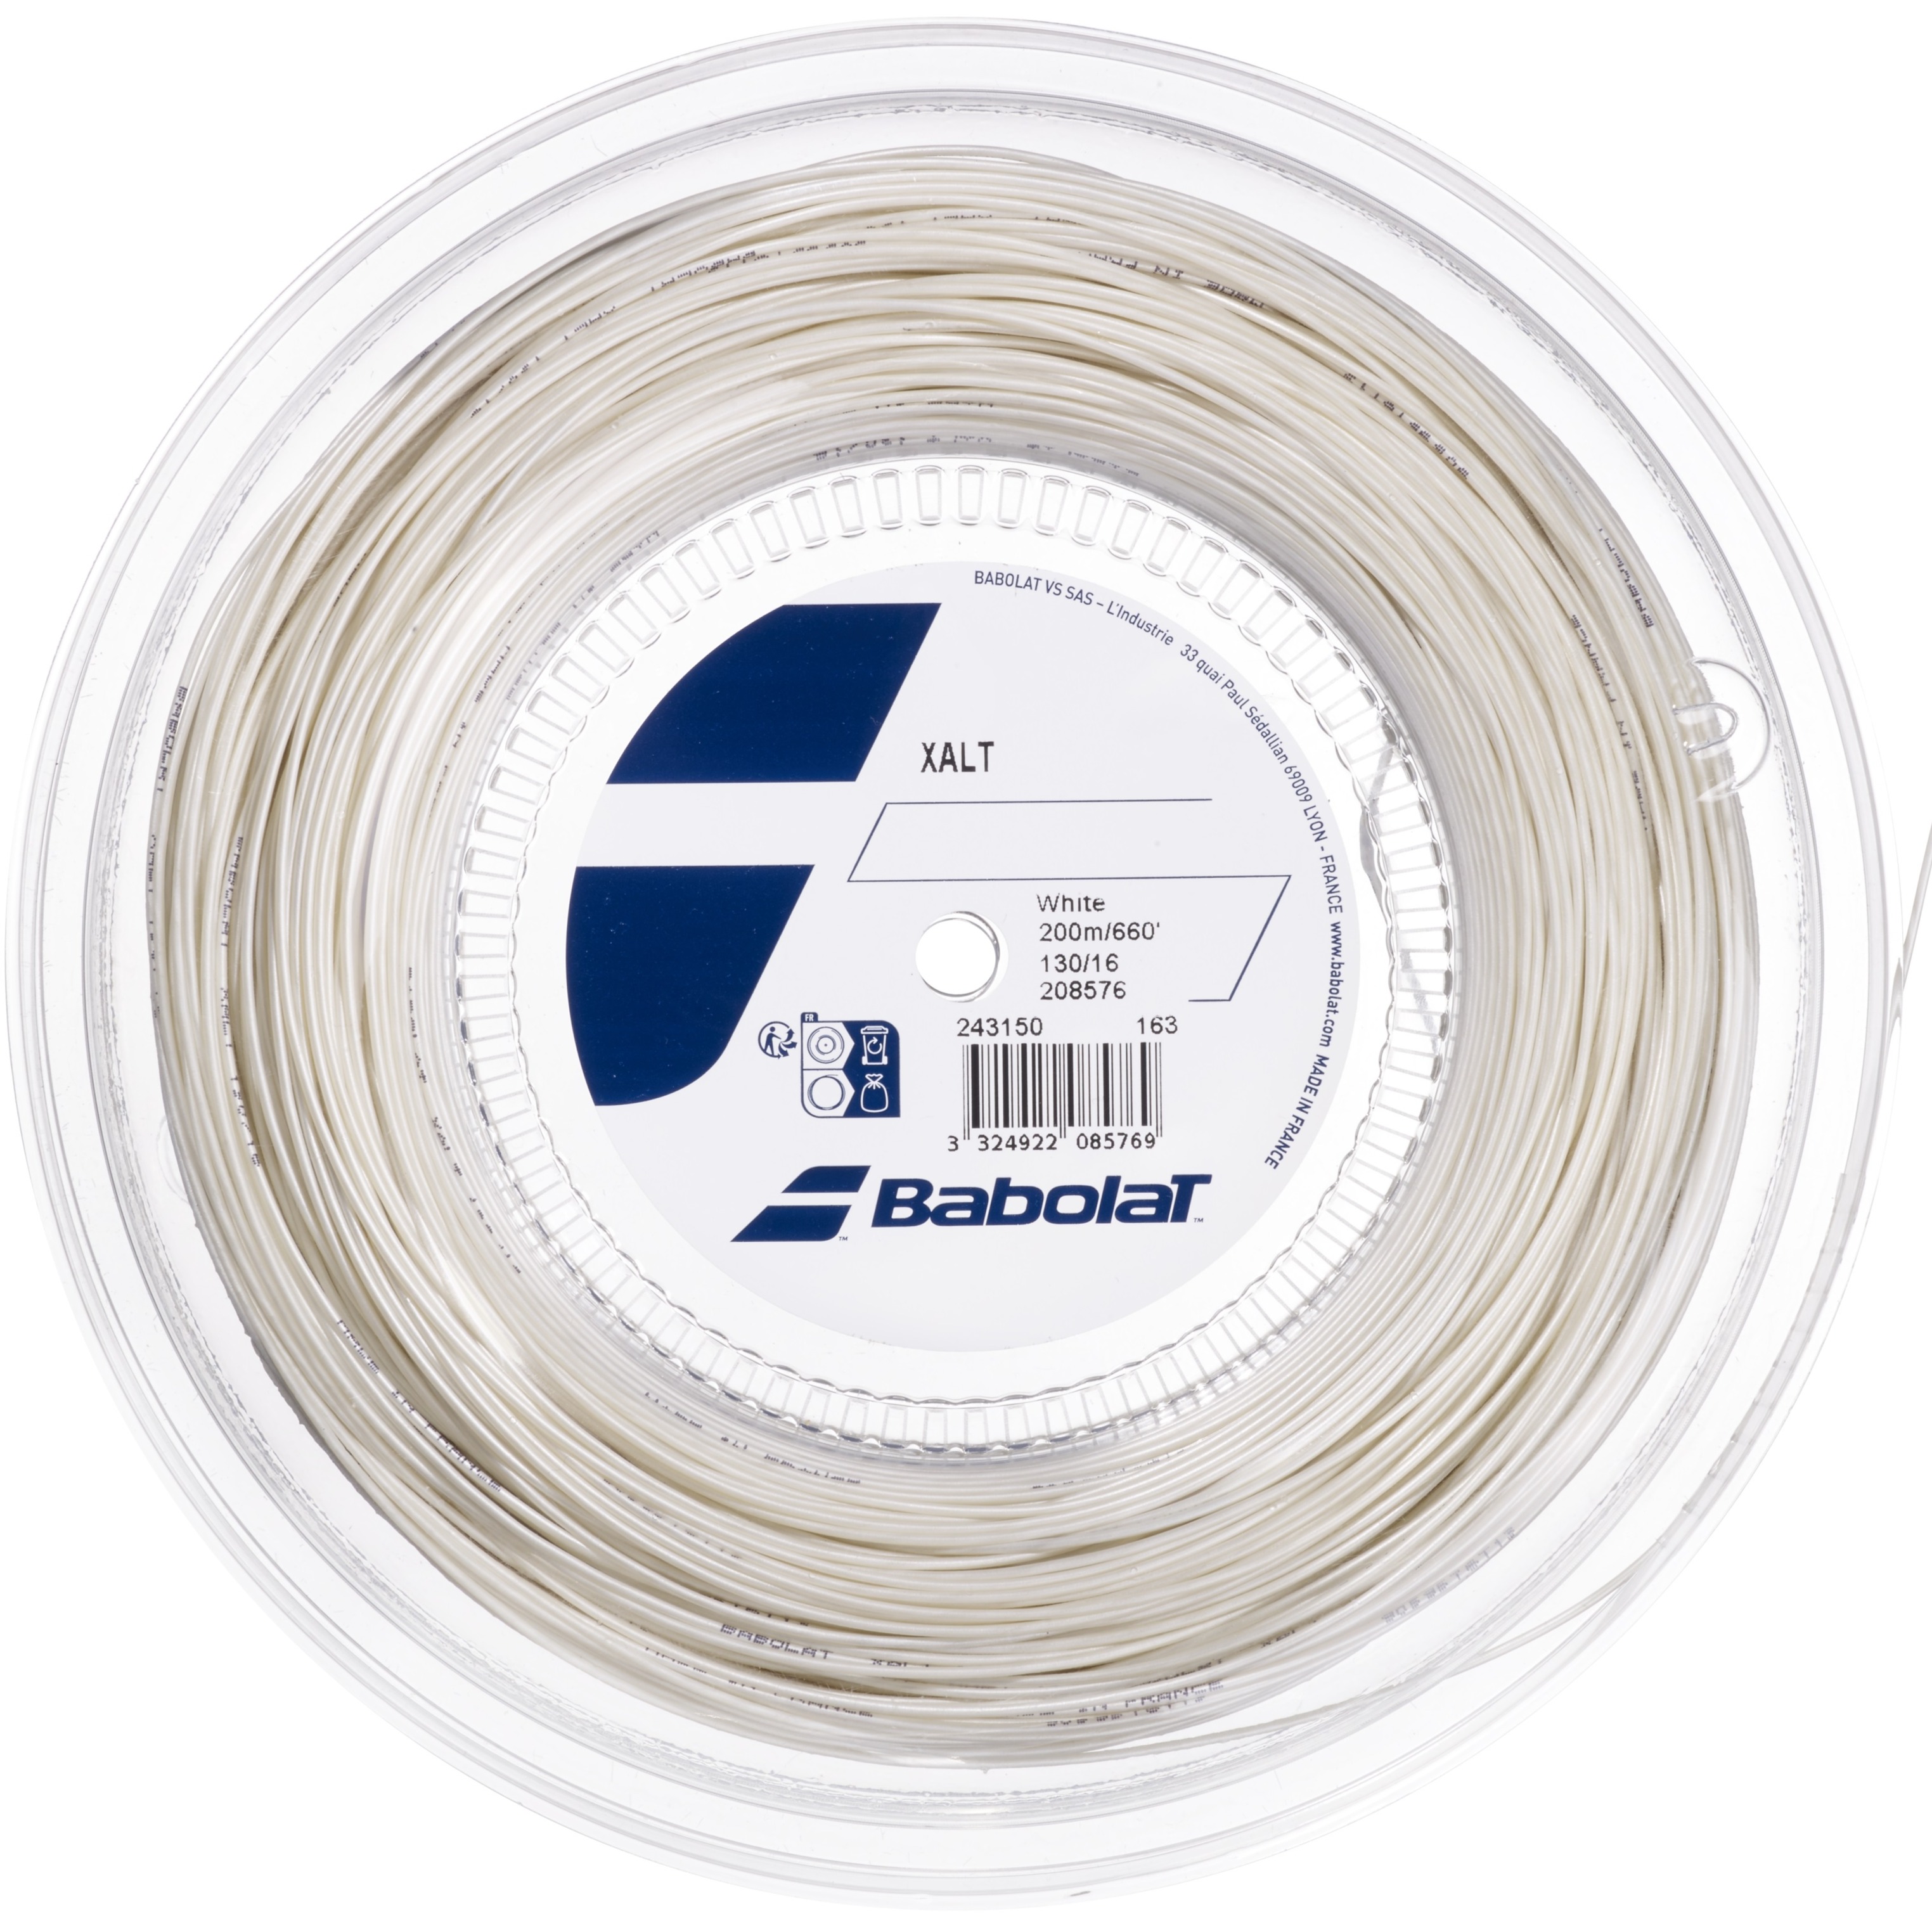 Babolat XALT 16g Spiral White Tennis String (Reel)